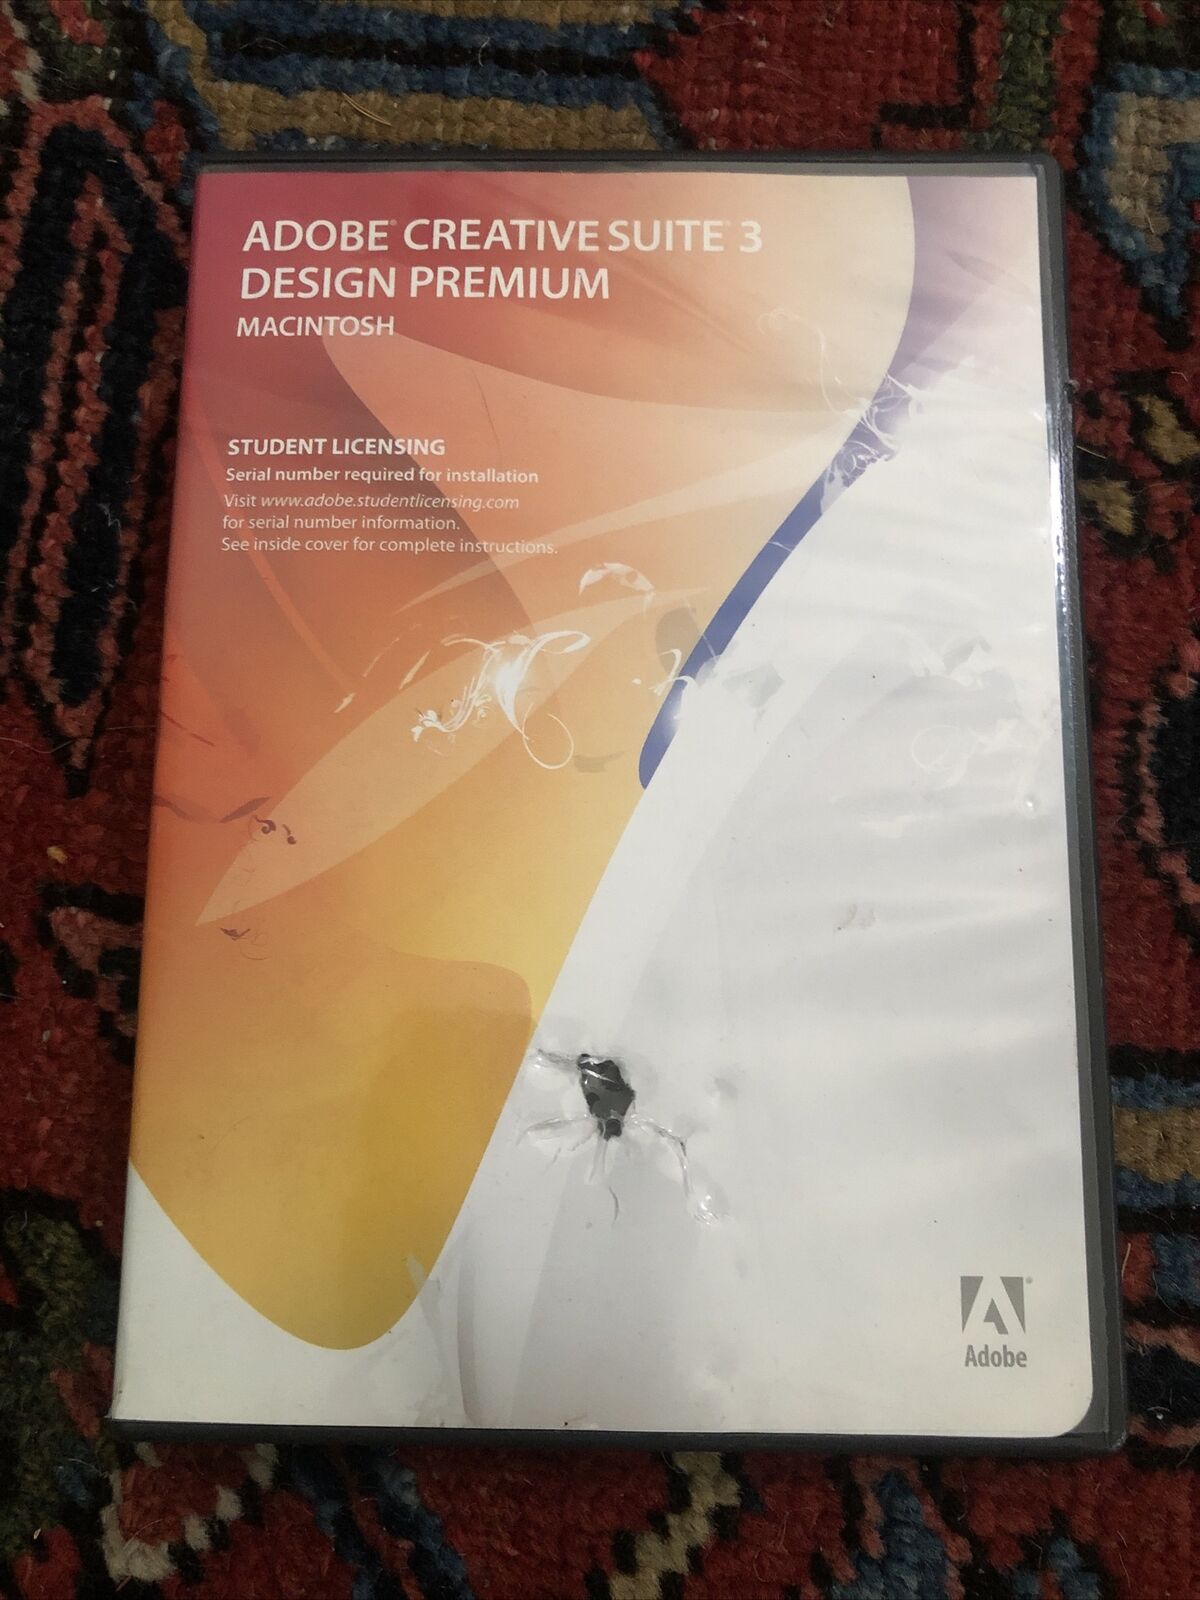 Adobe Creative Suite 3 Design Premium Macintosh w/ Serial Number Student